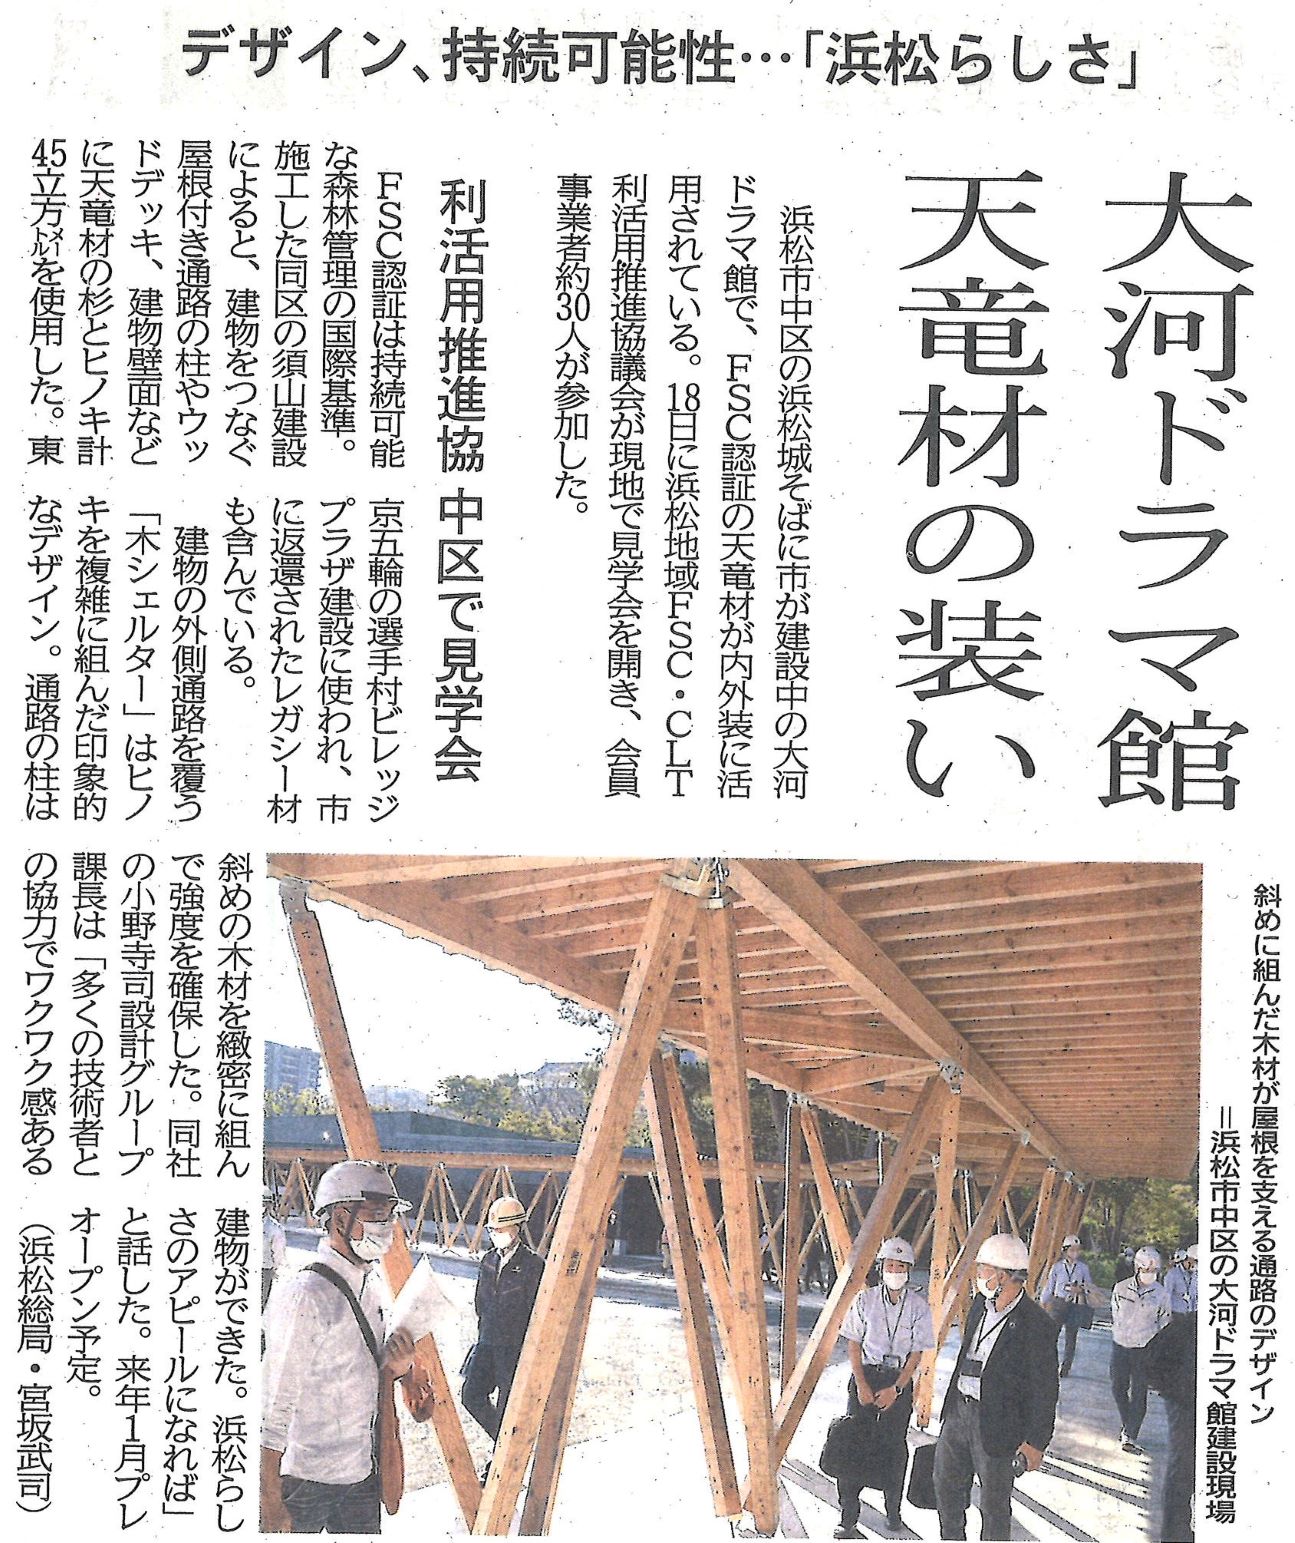 施工中の「どうする家康」大河ドラマ館が静岡新聞に掲載されました